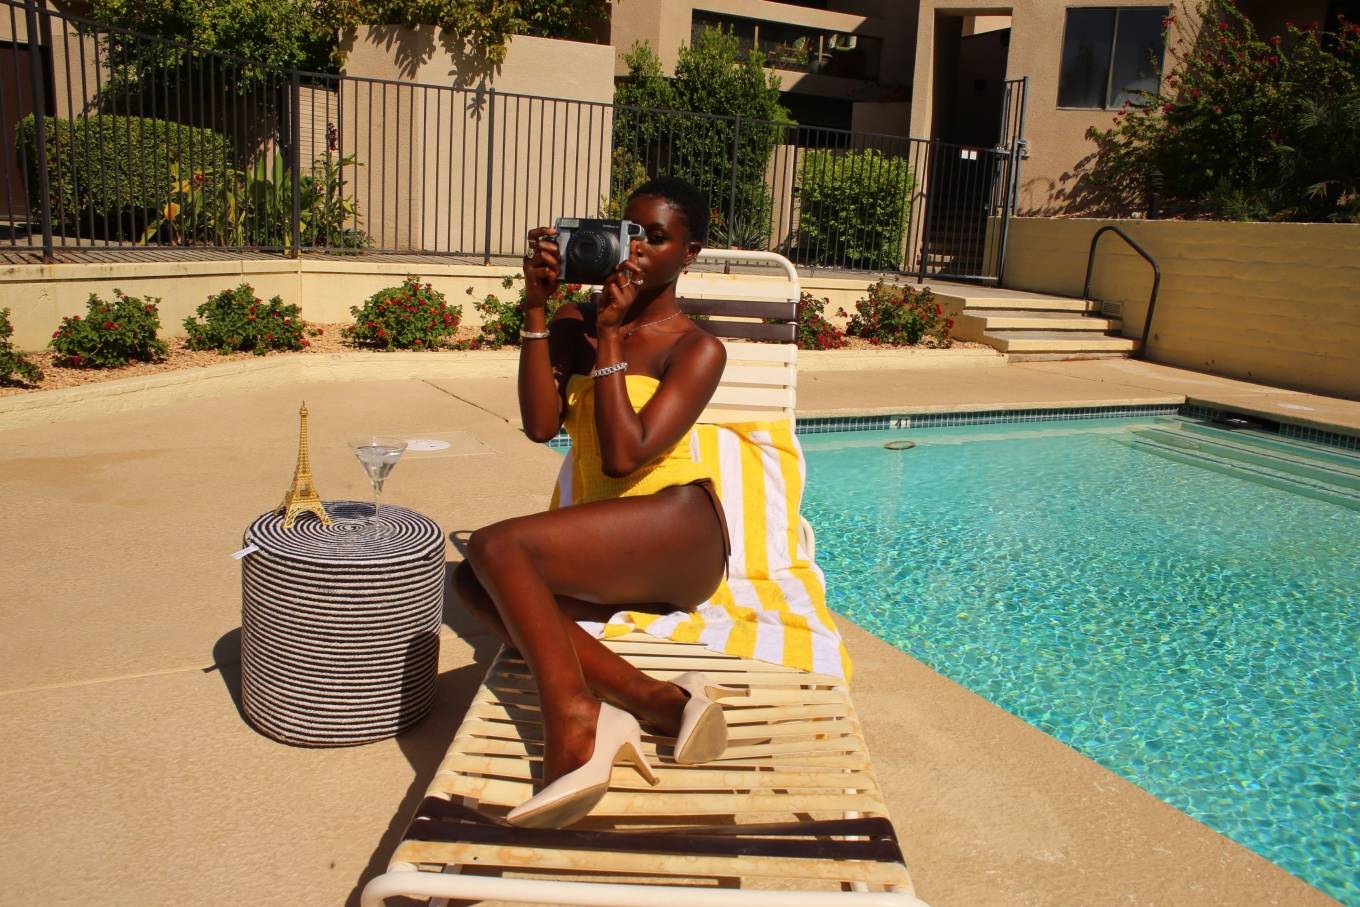 Diarra Sylla 2021 : Diarra Sylla - In a bikini by the pool in Palm Springs-...